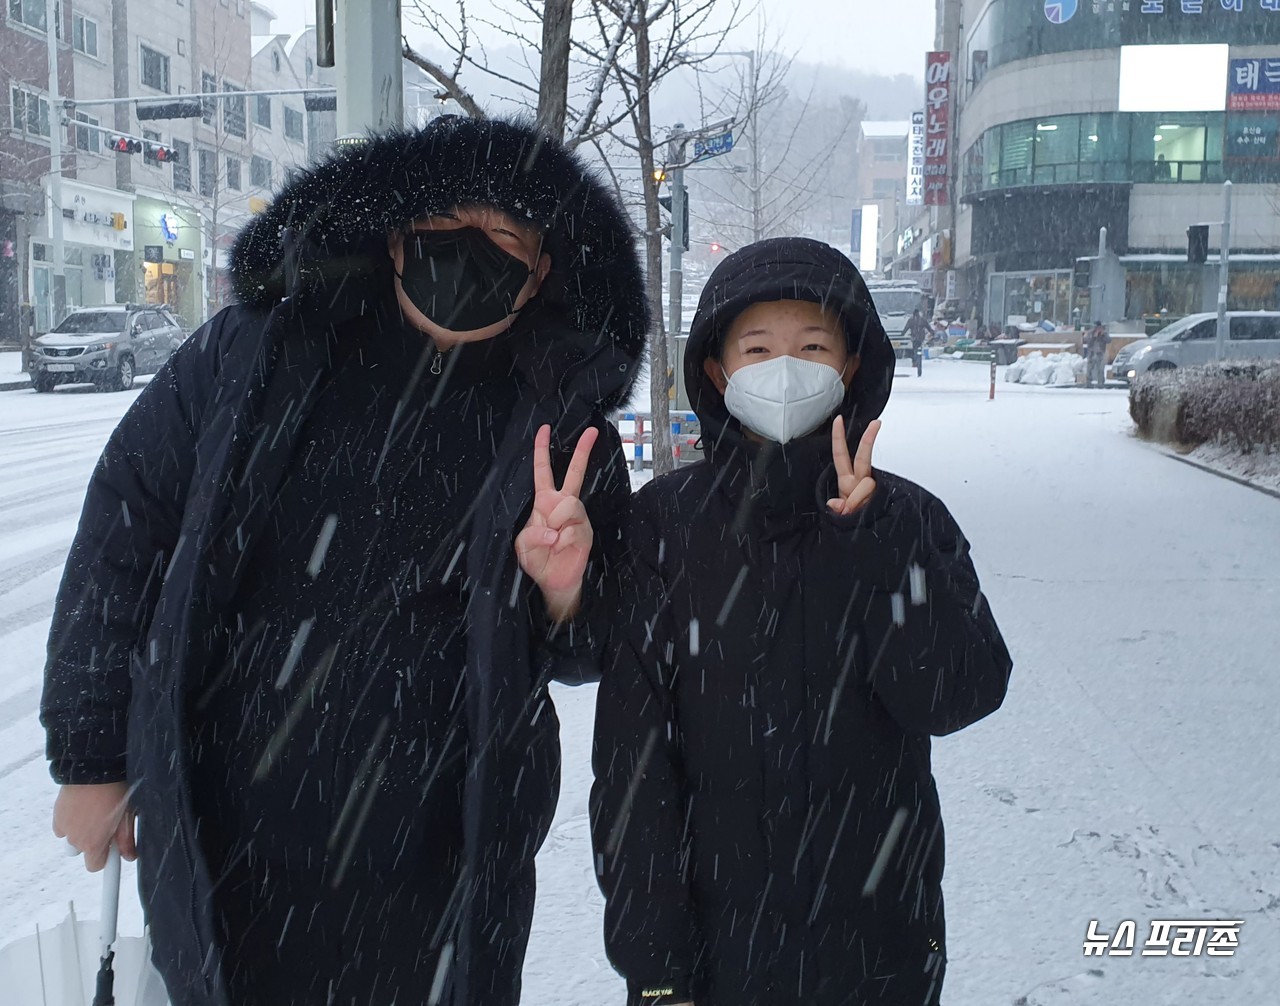 2021년 신축년(辛丑年) 새해 첫 날인 1일 오후 대전에 눈이 내리는 가운데, 대전 유성 노은에 사는 사촌남매가 웃으며 포즈를 하고 있다./ⓒ이현식 기자